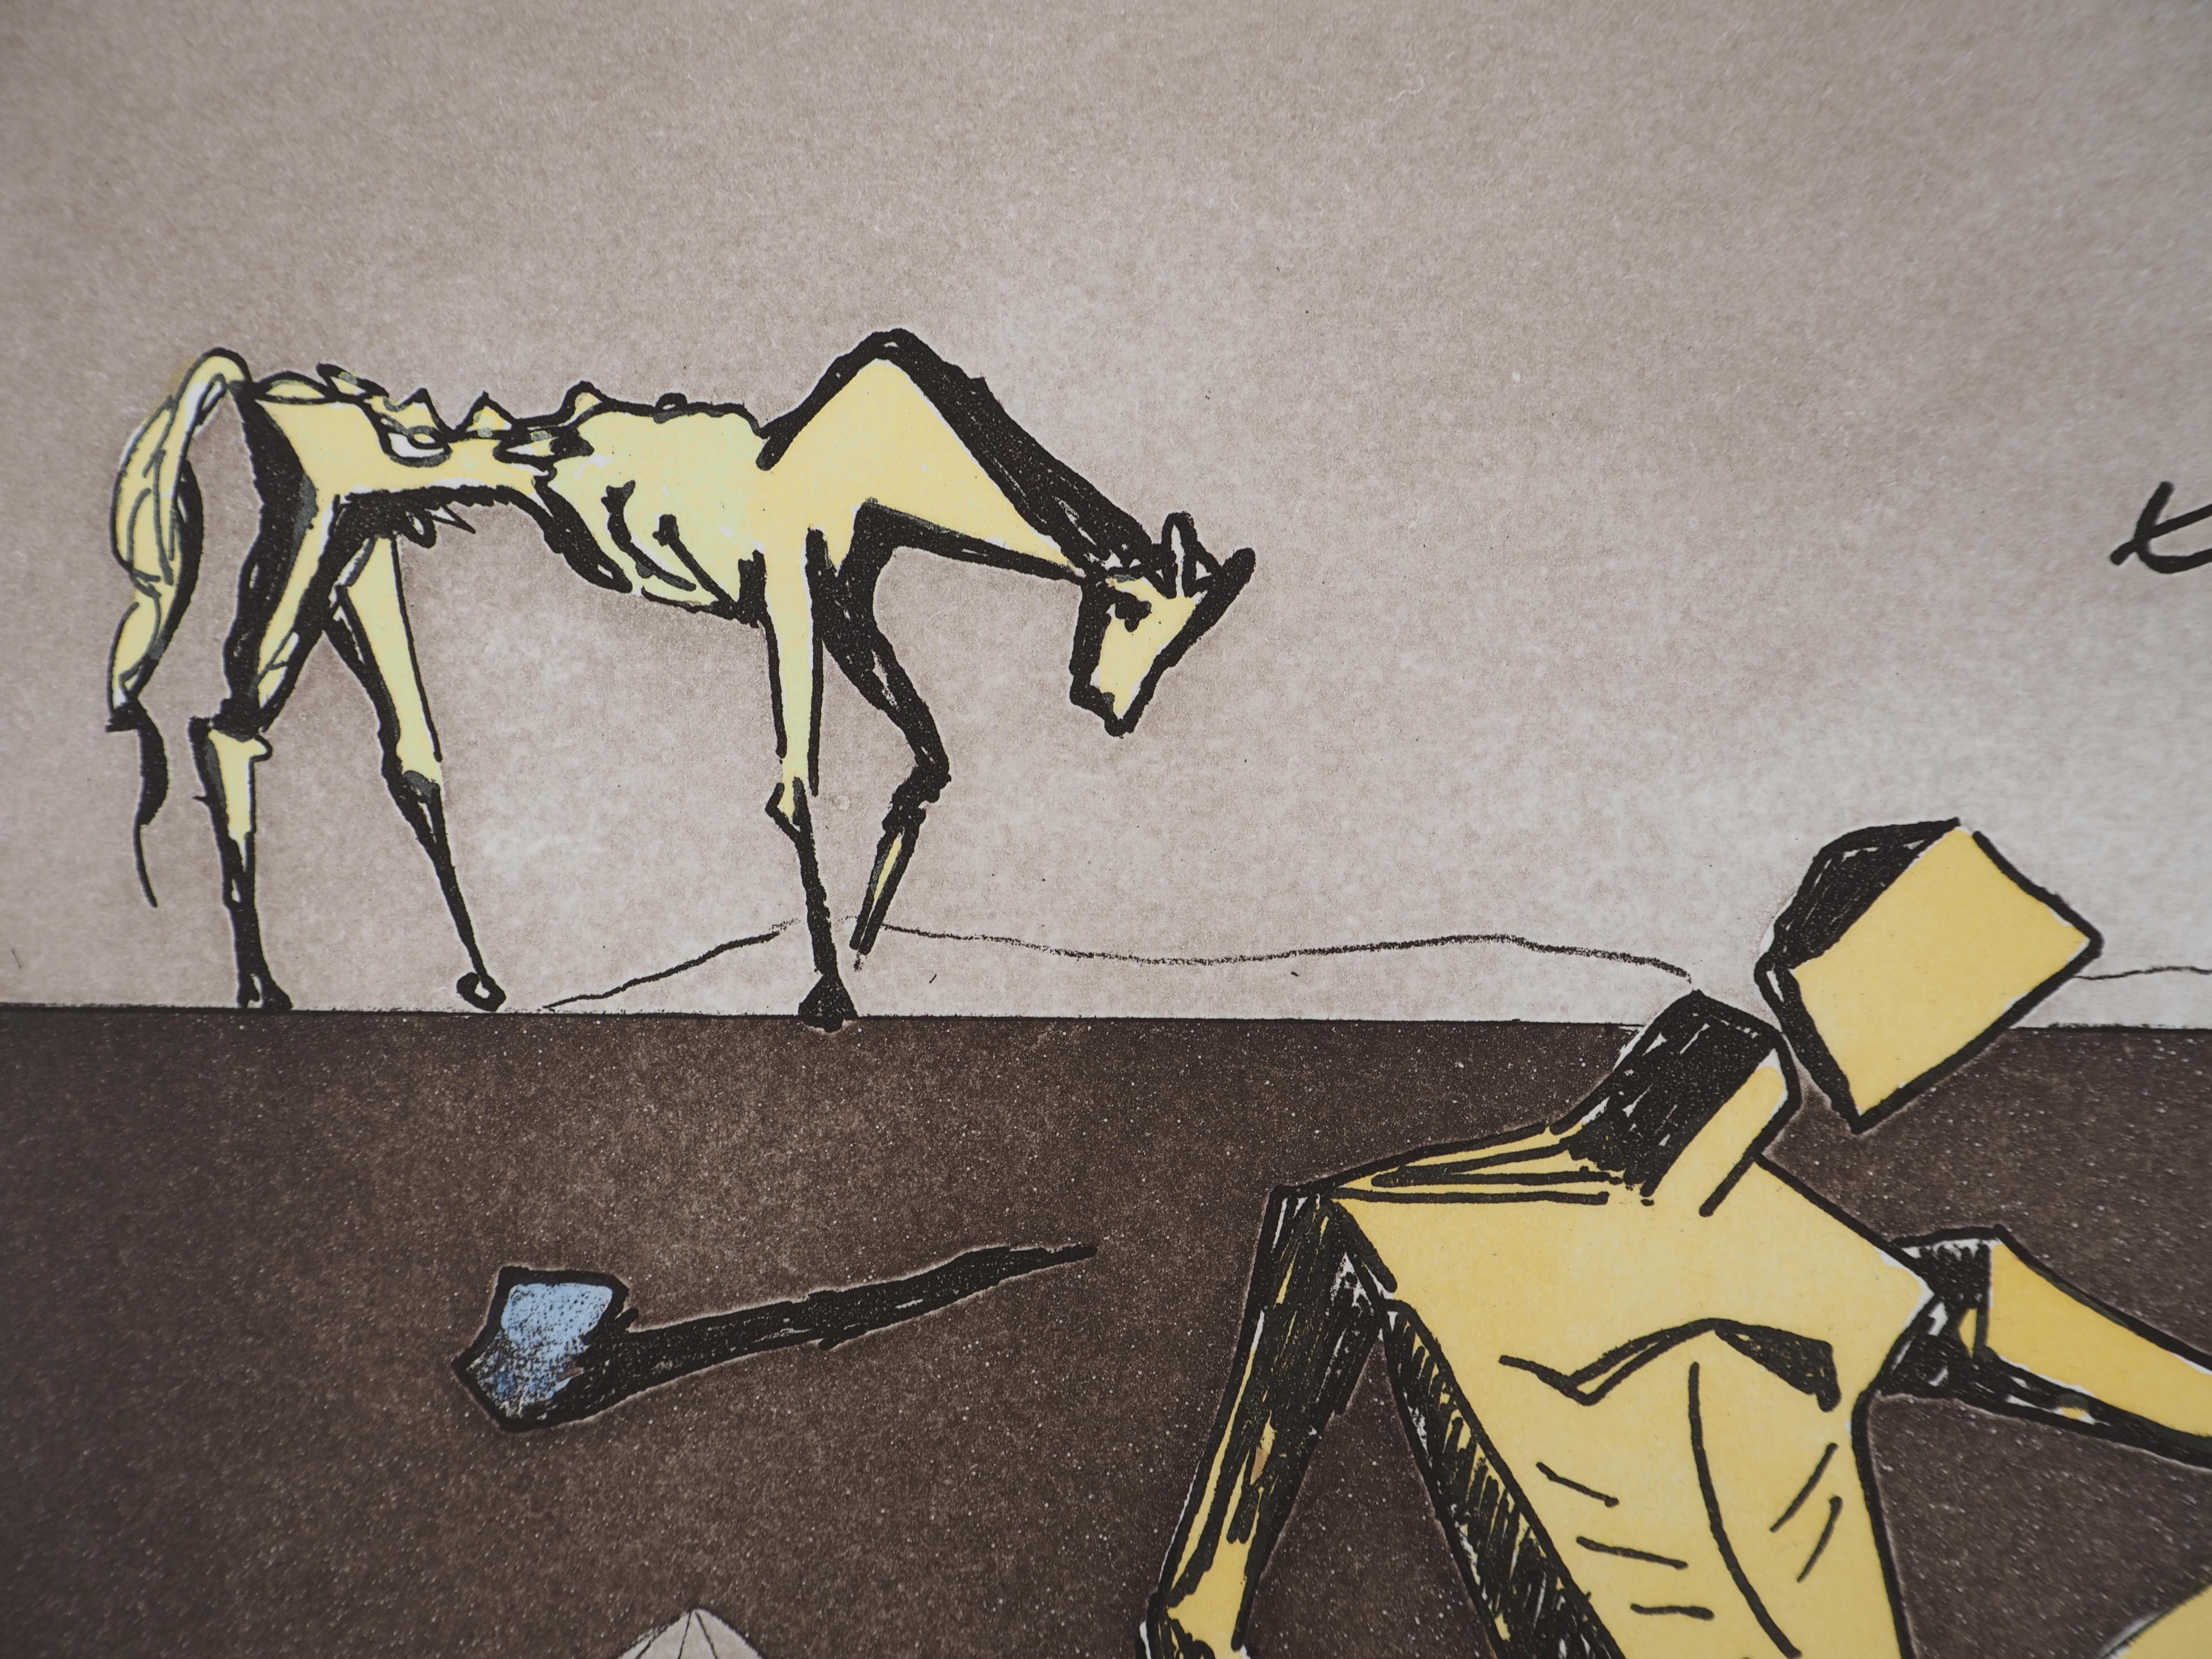 Salvador DALI (1904-1989)
Don Quijote : le miroir de la chevalerie, 1980

Gravure originale avec aquatinte
Hansigné au crayon
Numéroté / 125
Sur vellum d'Arches 76 x 56.5 cm (c. 30 x 22 in)
Authentifié par le cachet de l'éditeur 

REFERENCES :
-